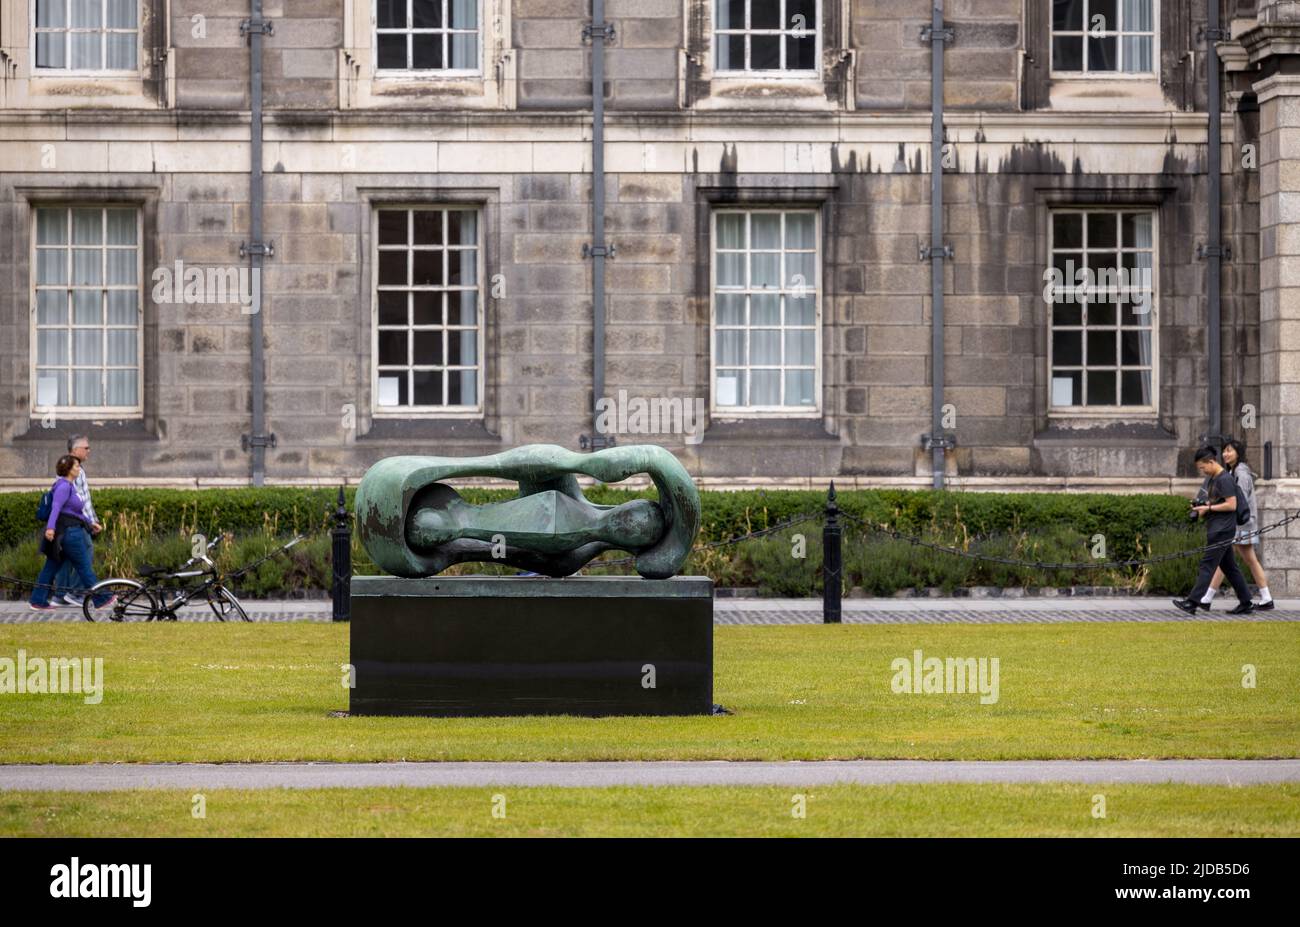 Dublino, Irlanda - 2 giugno 2022: La scultura in bronzo di Henry Moore 'Reclining Connected Forms' creata nel 1969 al Trinity College di Dublino, Irlanda Foto Stock